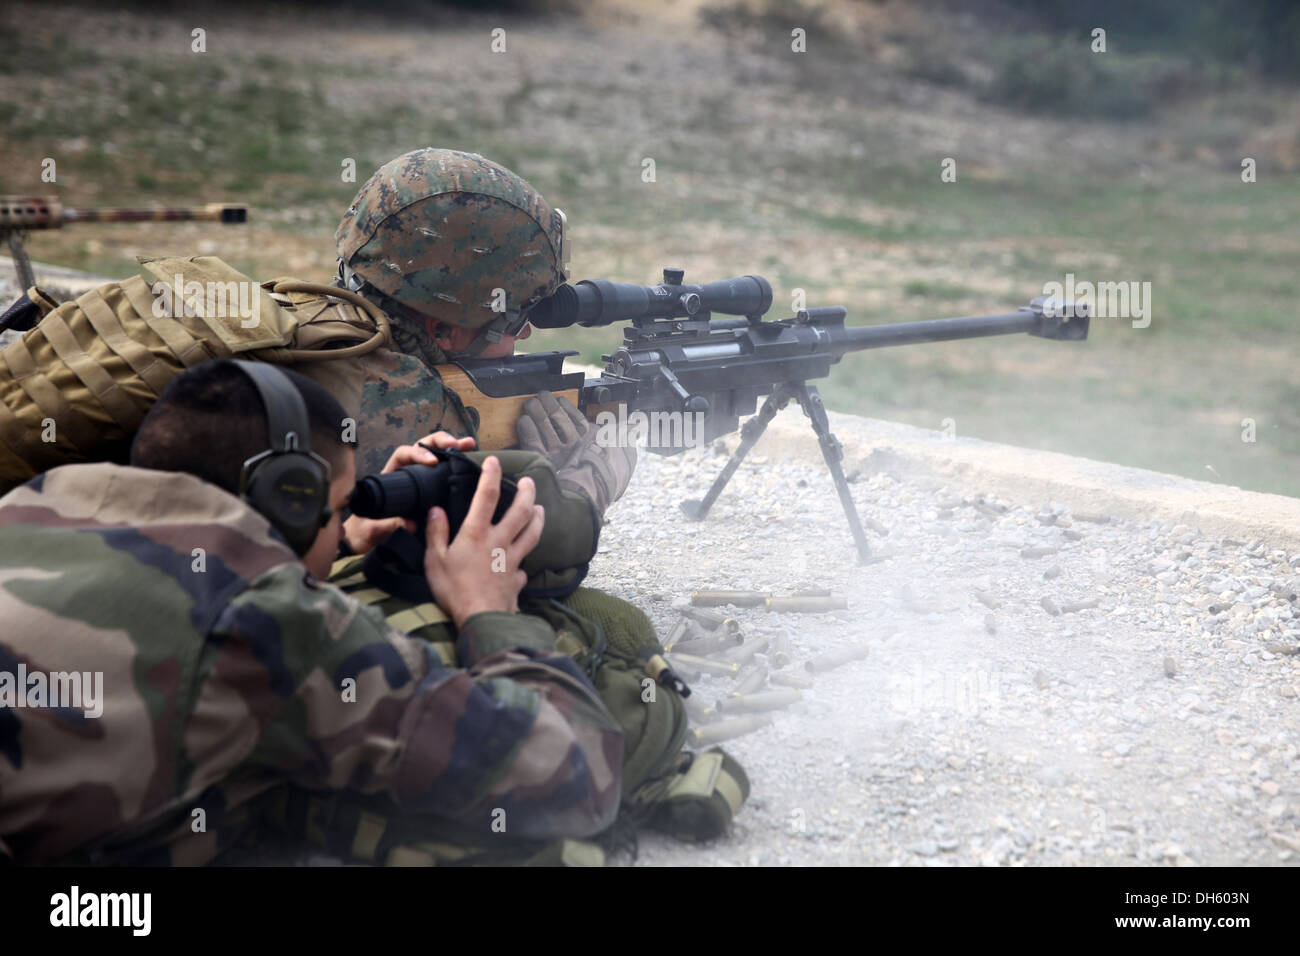 Un sniper des marines ayant des fins- Groupe de travail air-sol marin feux d'intervention en cas de crise une M107 spécial de calibre .50 Applic Banque D'Images